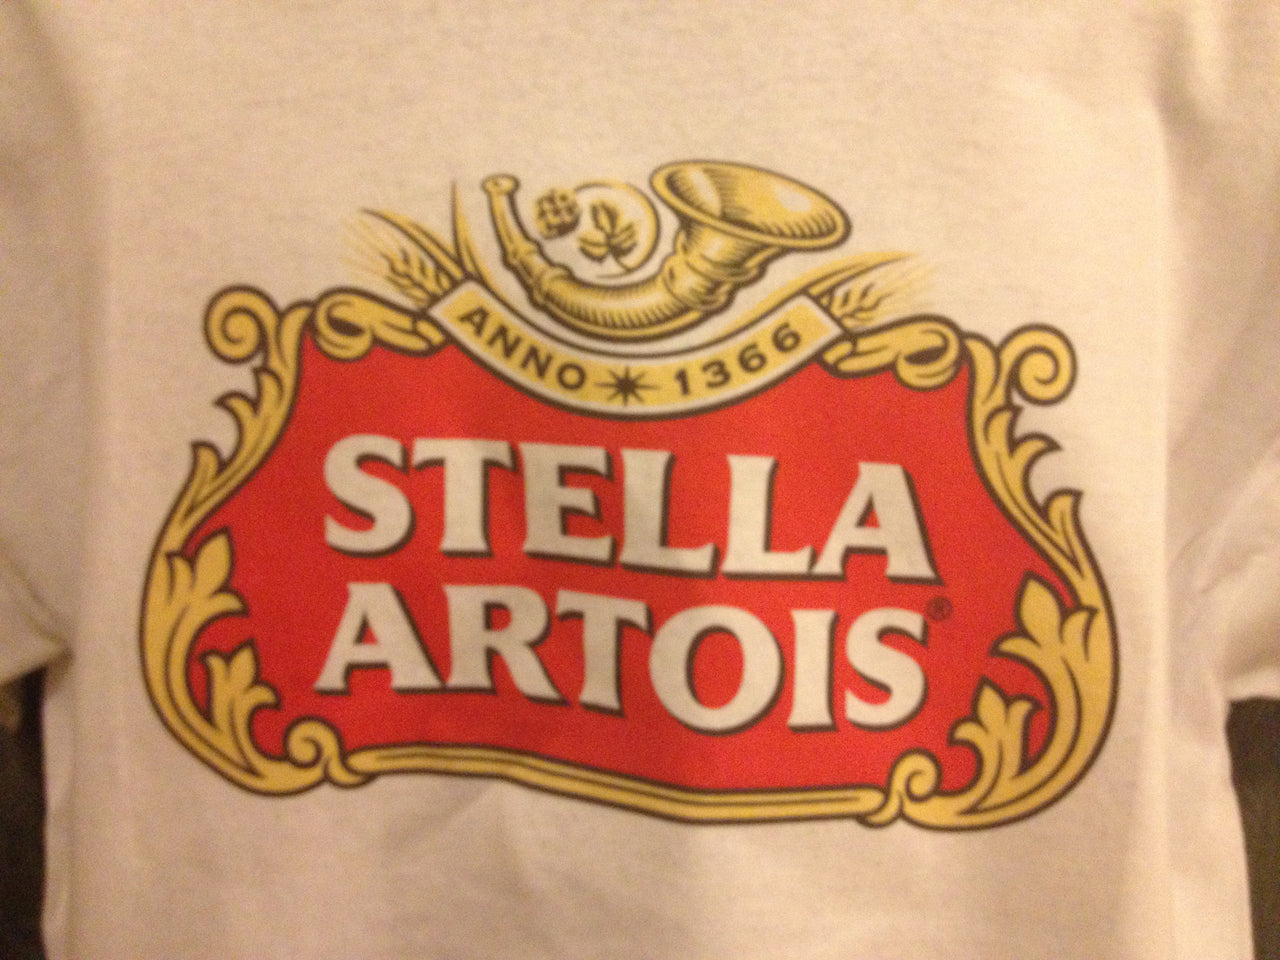 Stella Artois Beer Tshirt - TshirtNow.net - 4